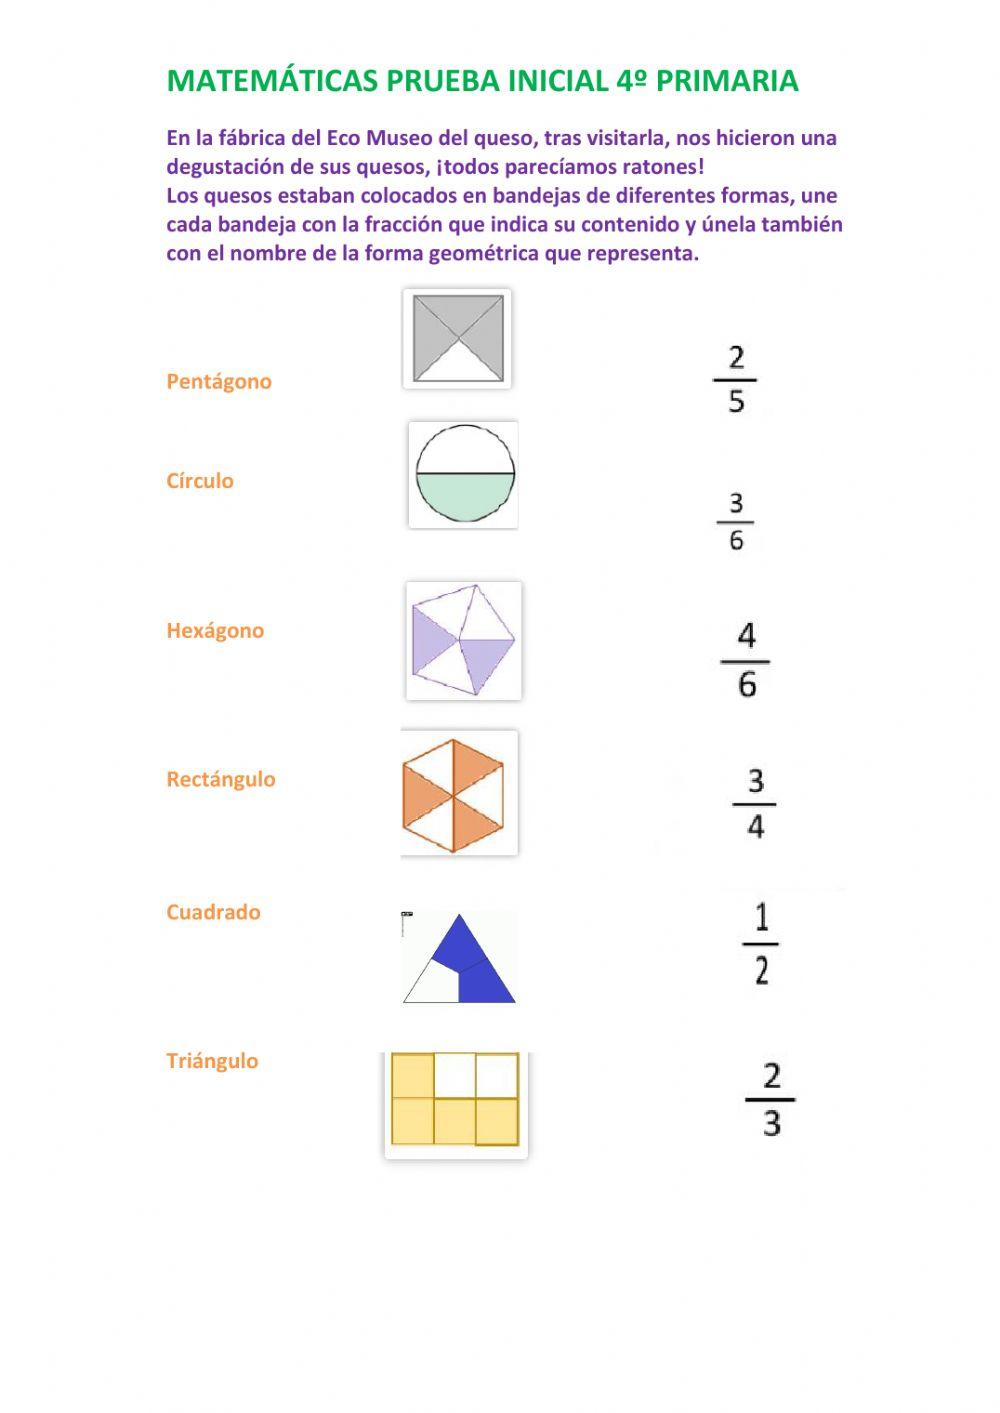 Geometría y fracciones